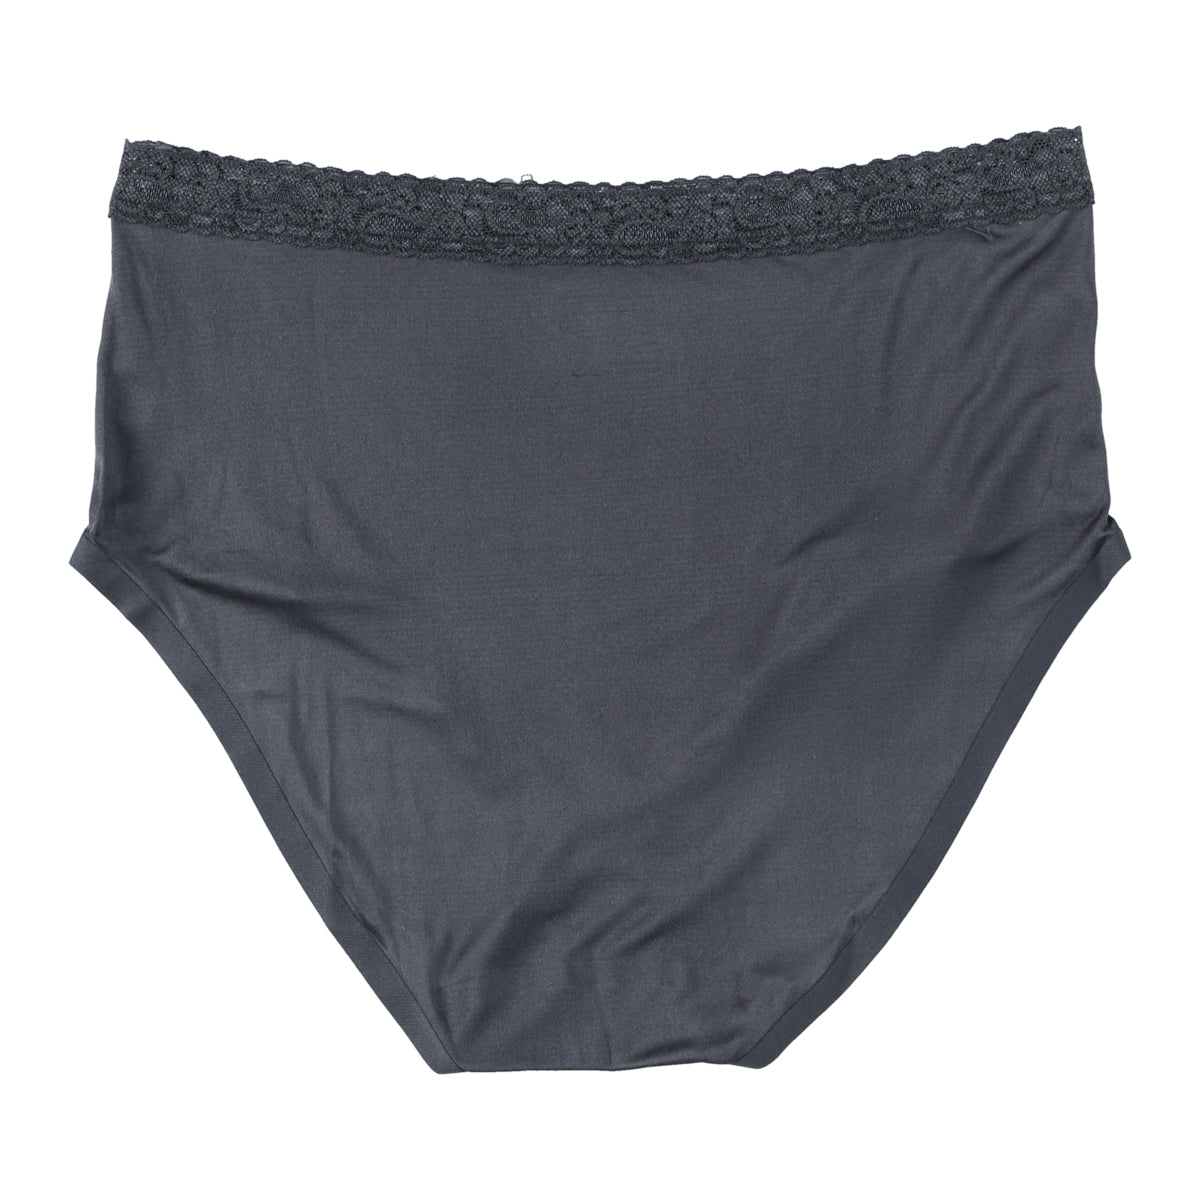 Silk 100% Seamless Shorts (CHACOAL GRAY)